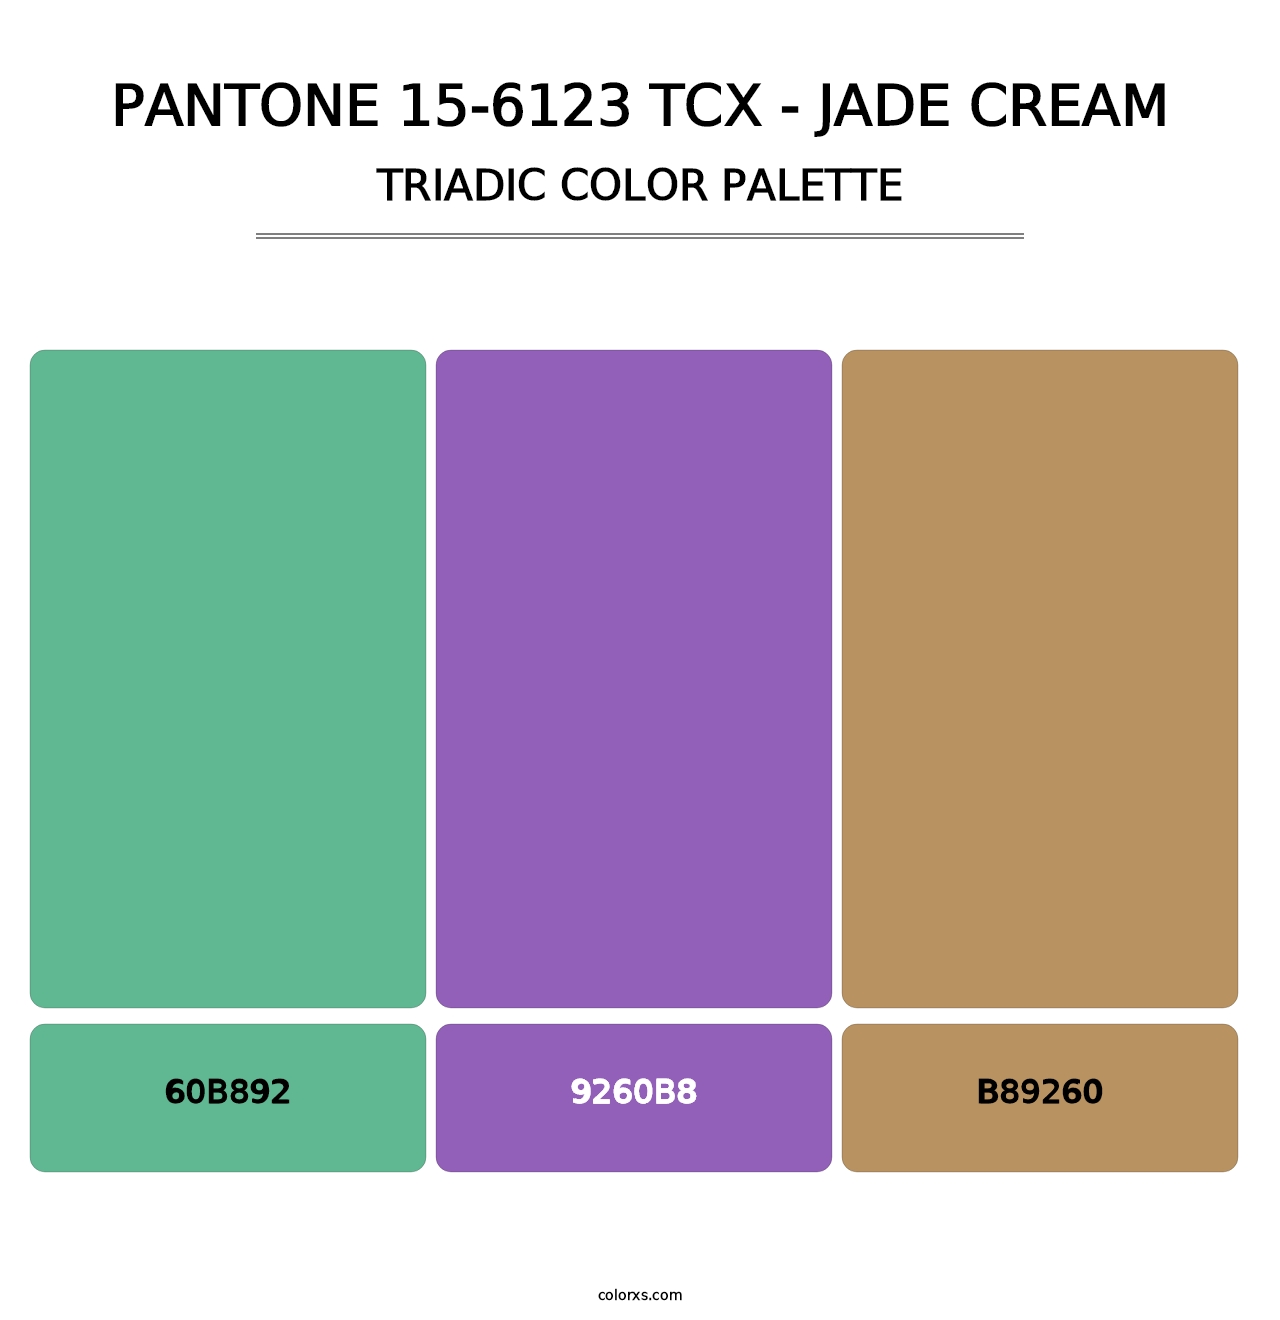 PANTONE 15-6123 TCX - Jade Cream - Triadic Color Palette